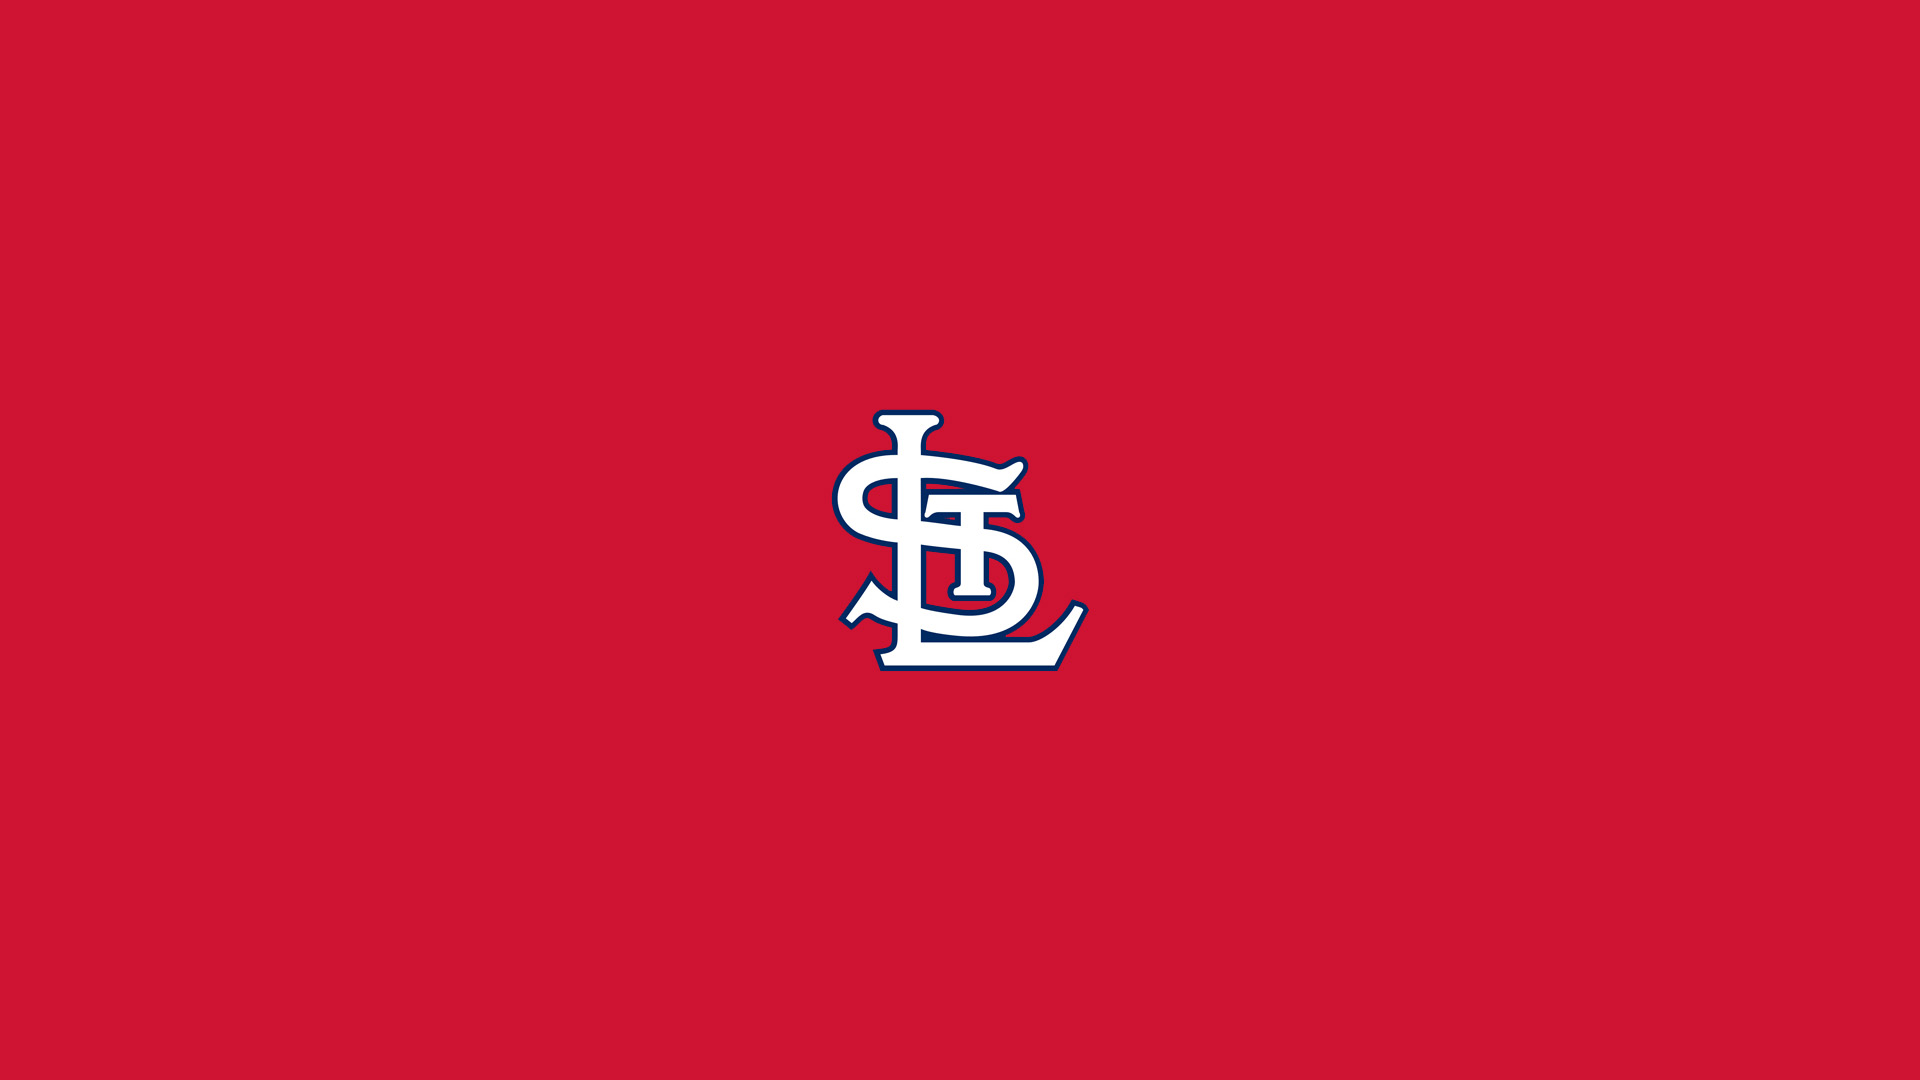 St Louis Cardinals Red Wallpaper HDwallwide